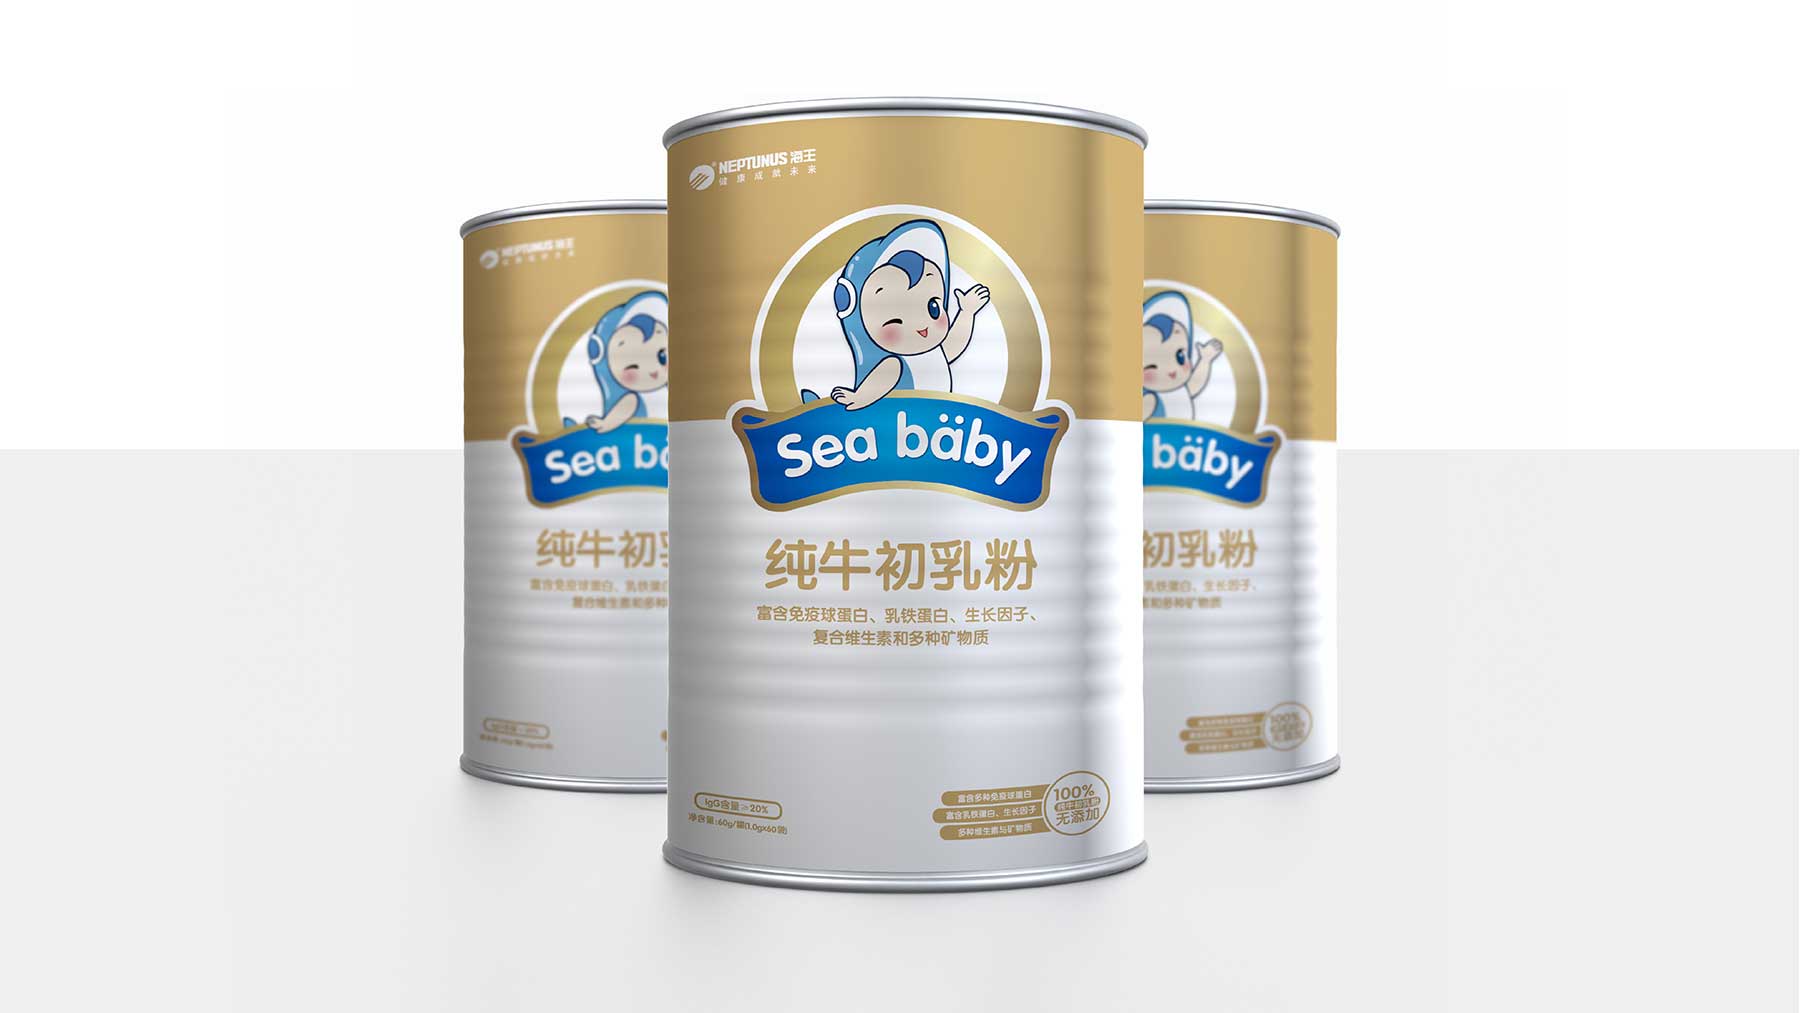 海婴宝 营养保健食品品牌设计  奶粉包装设计  儿童保健品包装设计  儿童保健品logo设计 儿童保健品vi设计 互与互创新品牌顾问